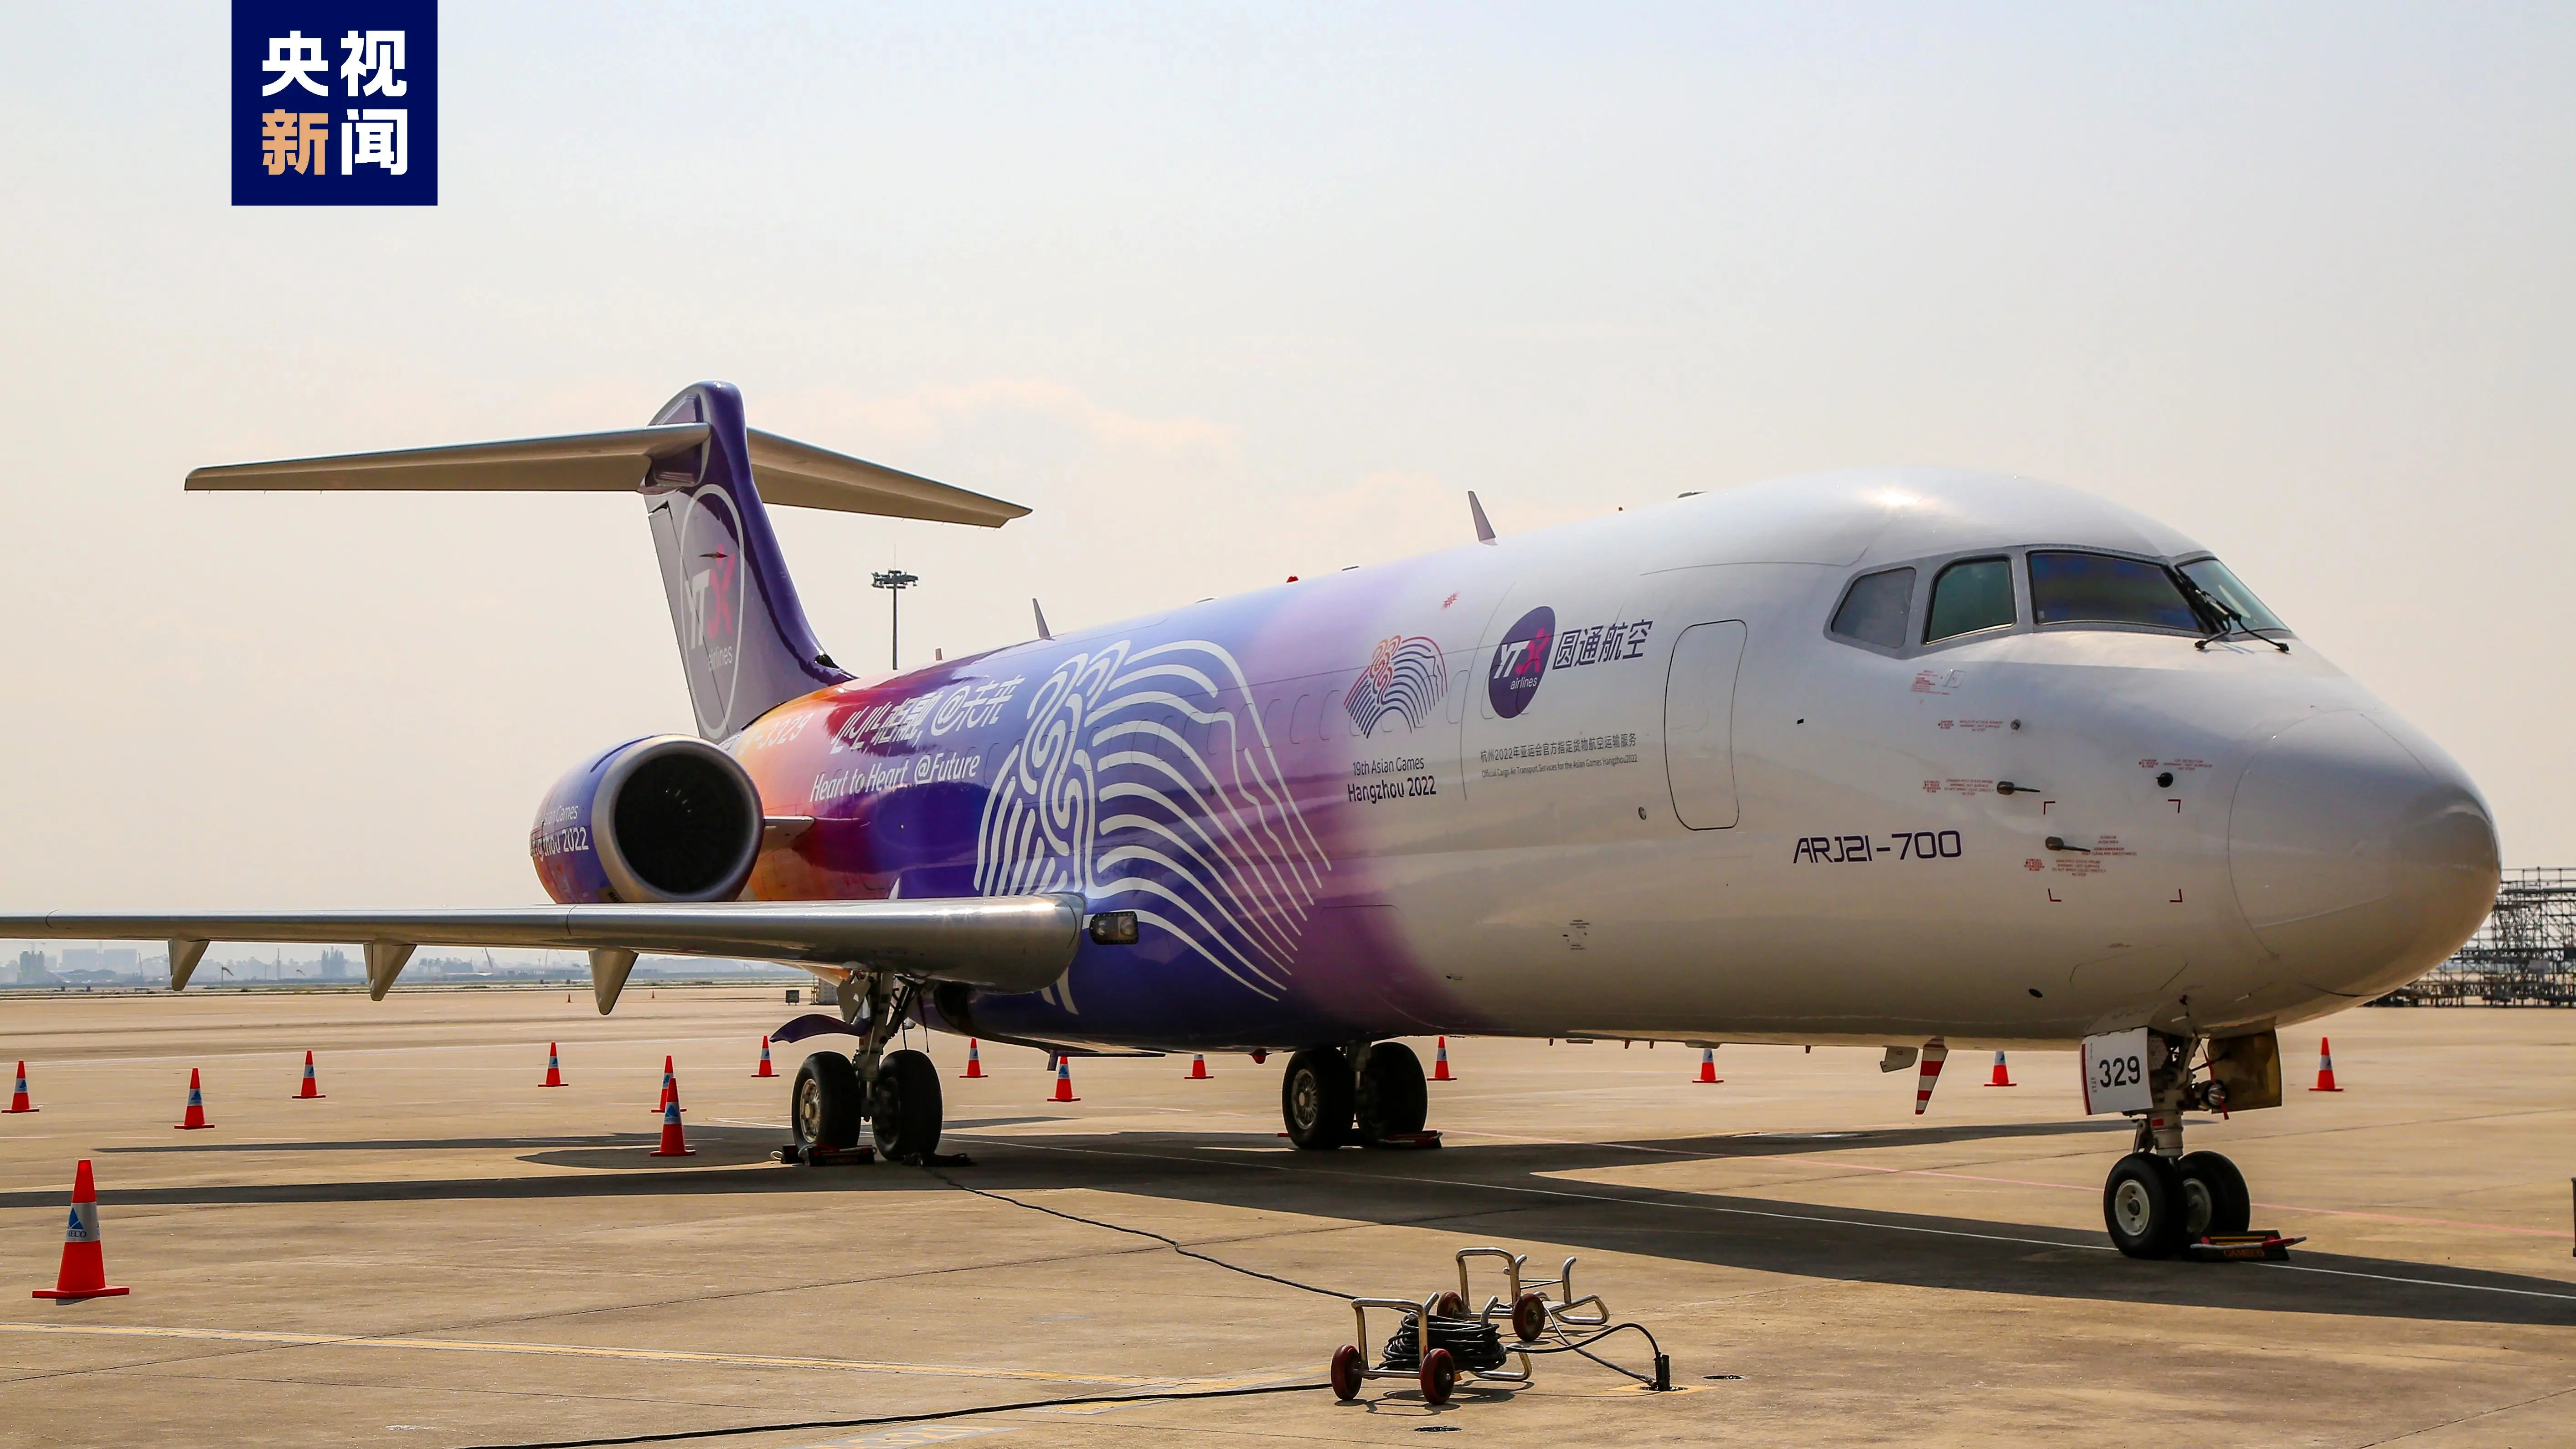 تحویل نخستین هواپیماهای تغییر کاربری شده از مسافربری به باری ARJ21